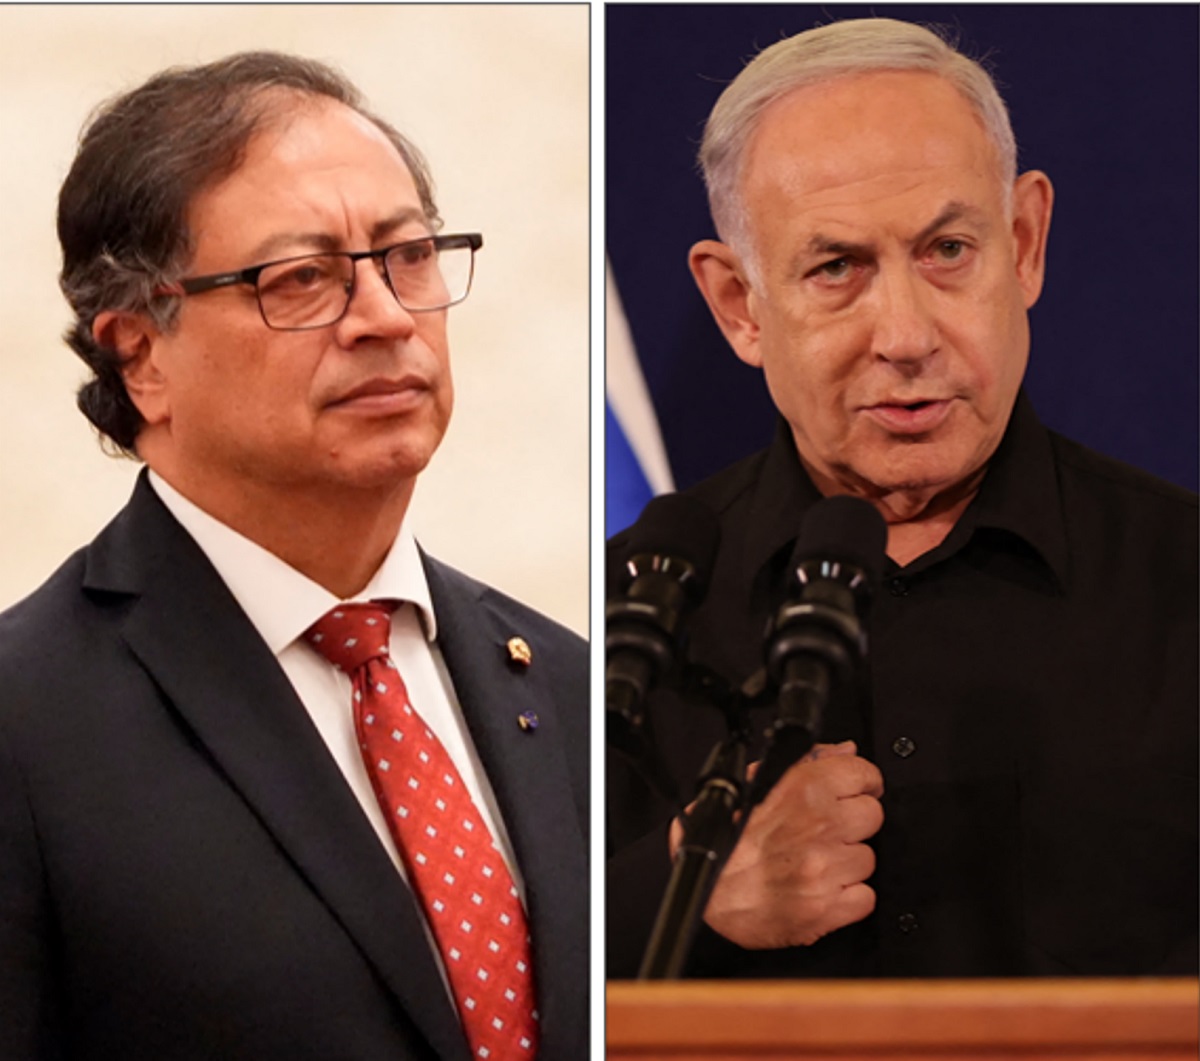 Gustavo Petro anuncia que apoyará denuncia en CPI contra Benjamín Netanyahu